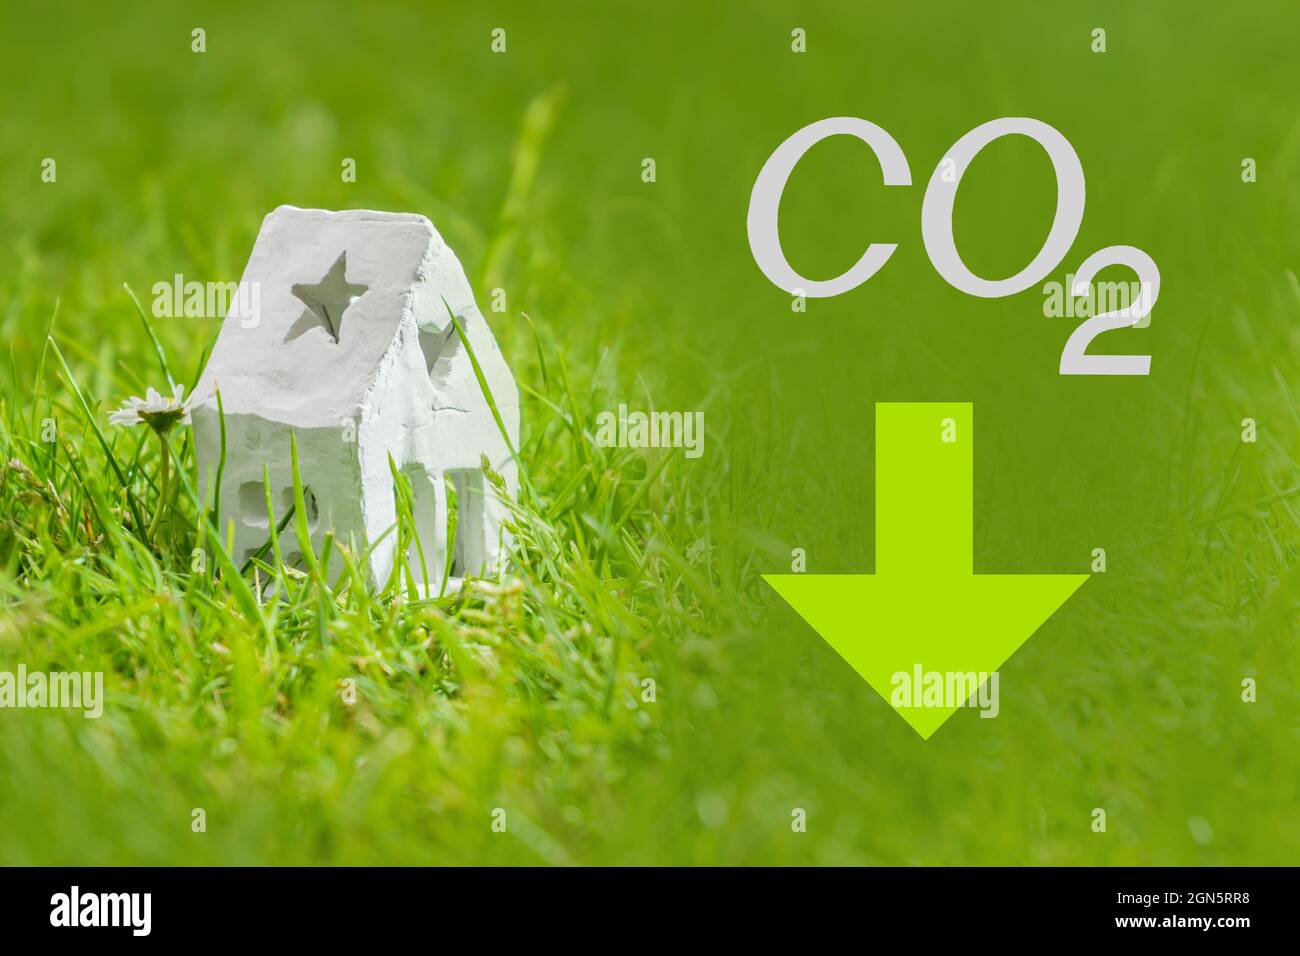 Reduzierung der Kohlendioxidemissionen, Begrenzung der globalen Erwärmung und Konzept des Klimawandels. Weißes Haus, CO2-Schild und grüner Pfeil nach unten Stockfoto